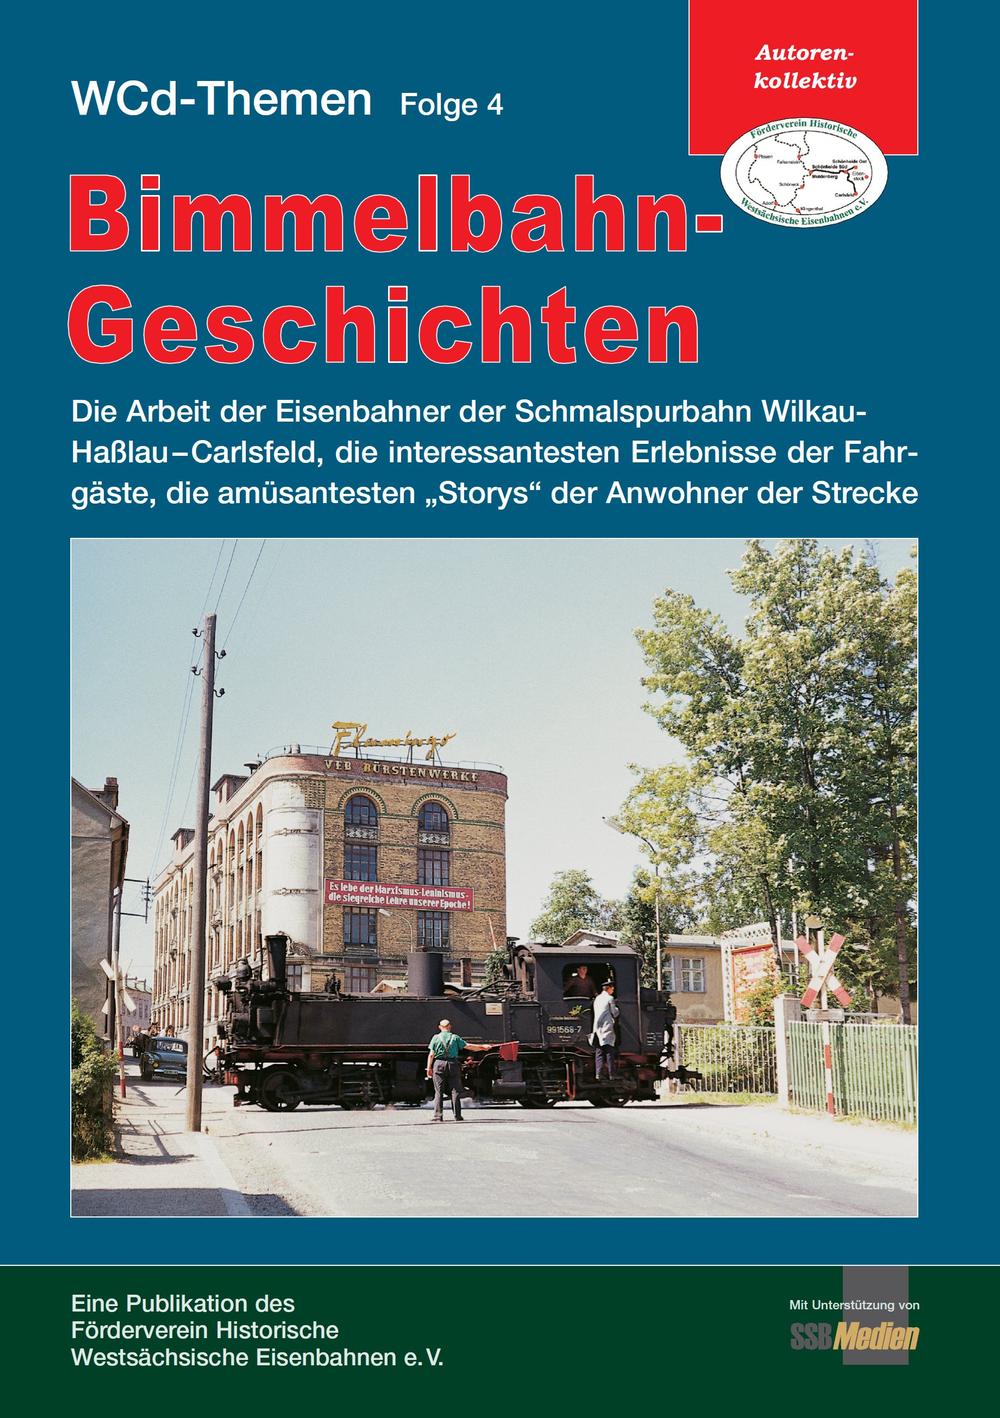 Cover Broschüre Bimmelbahn-Geschichten - WCd-Themen Folge 4